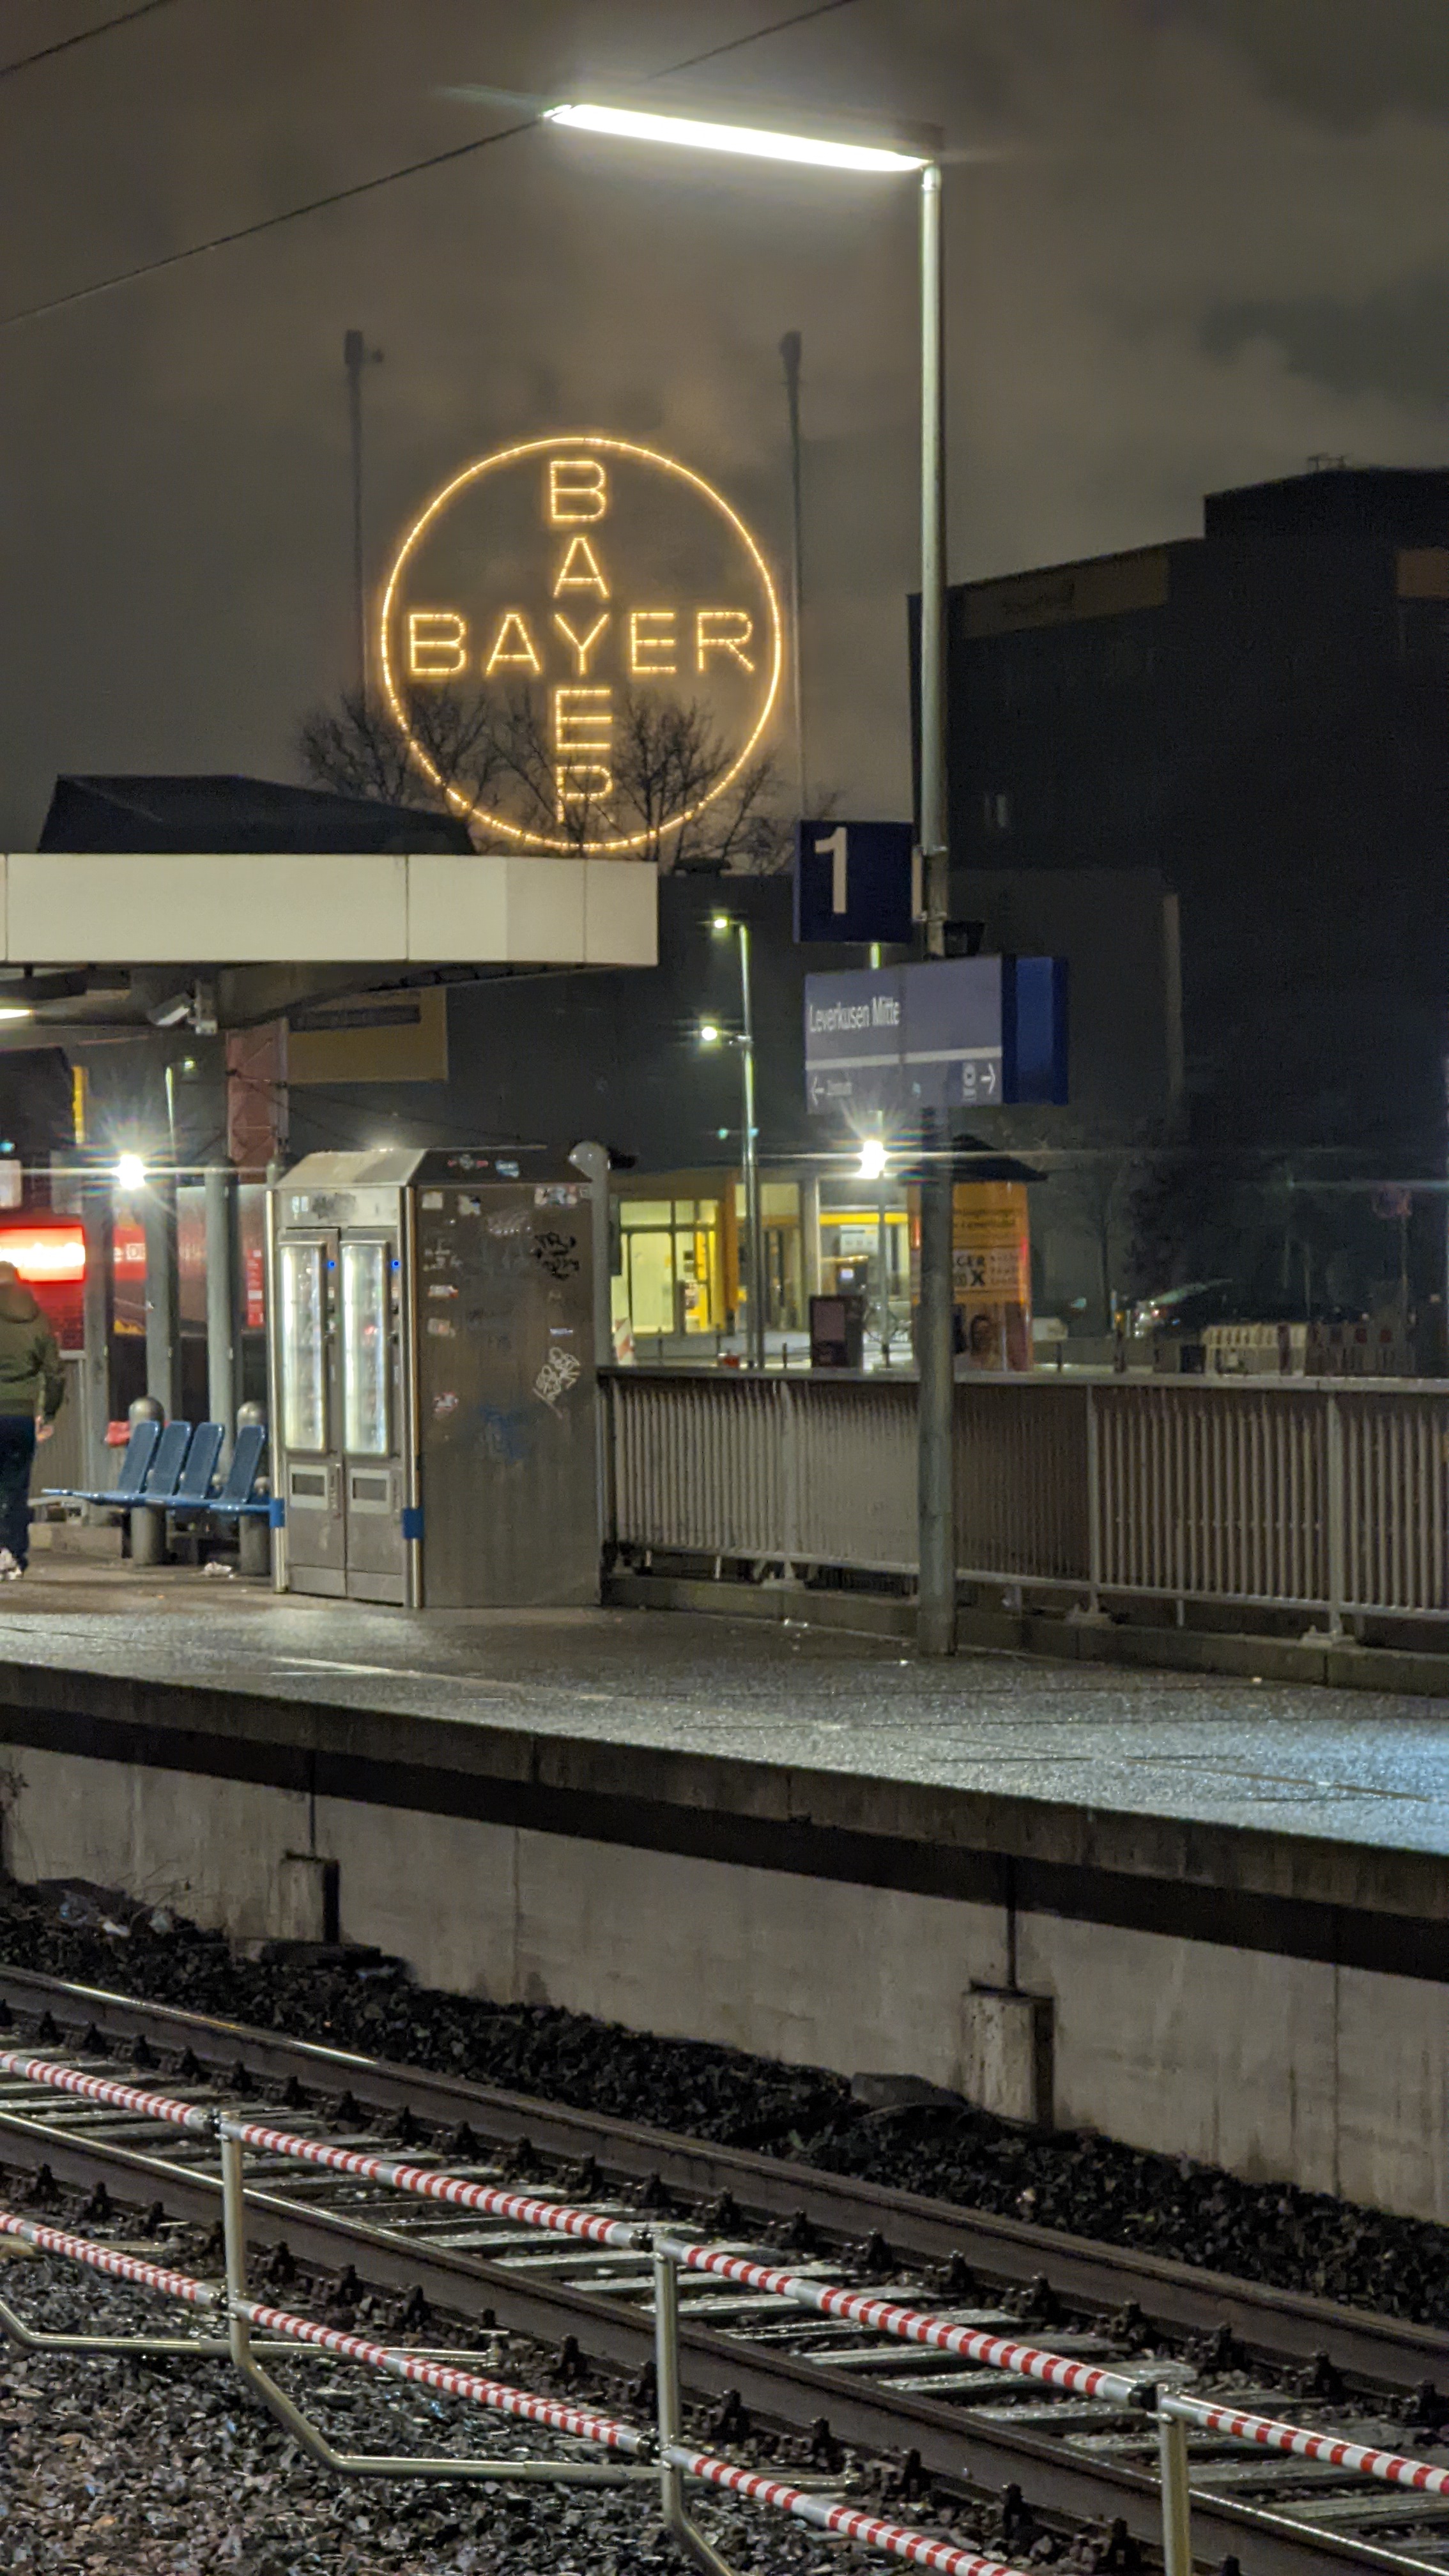 Am unteren Bildrand sind die Schienen und der Bahnsteig von Gleis 1 zu sehen. Der Bahnsteig besteht aus dem Bahnhofsschild "Leverkusen-Mitte", dem Schild "1" für Gleis 1 und zwei Automaten für Snacks und Getränke. Mittig am linken R